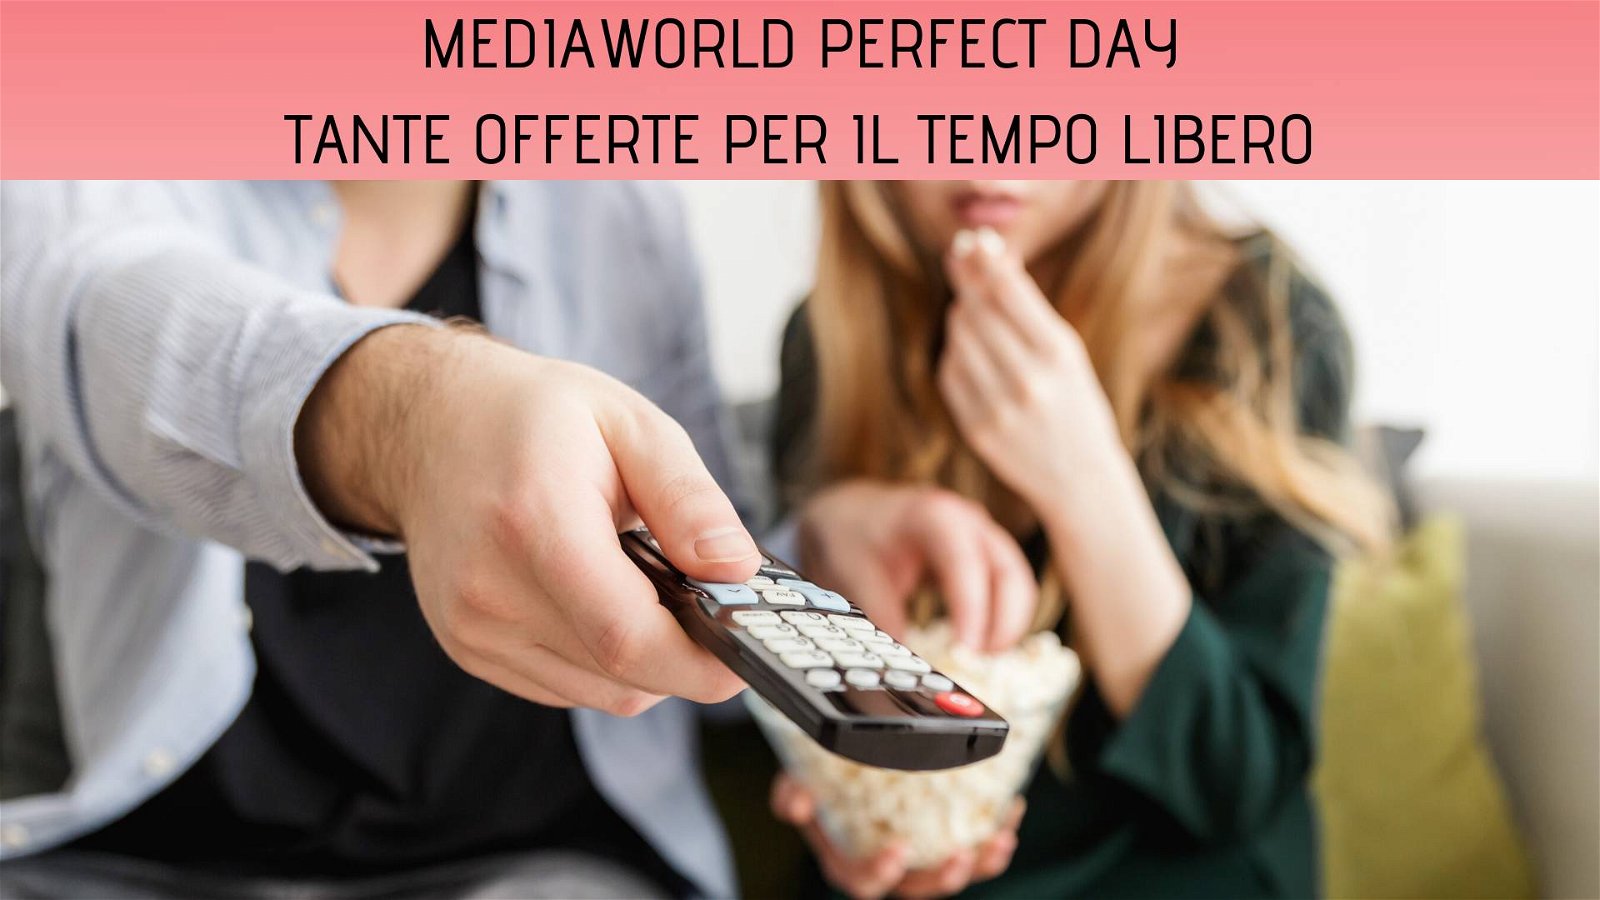 Immagine di Tante offerte per passare una giornata perfetta: arriva Perfect Day di MediaWorld